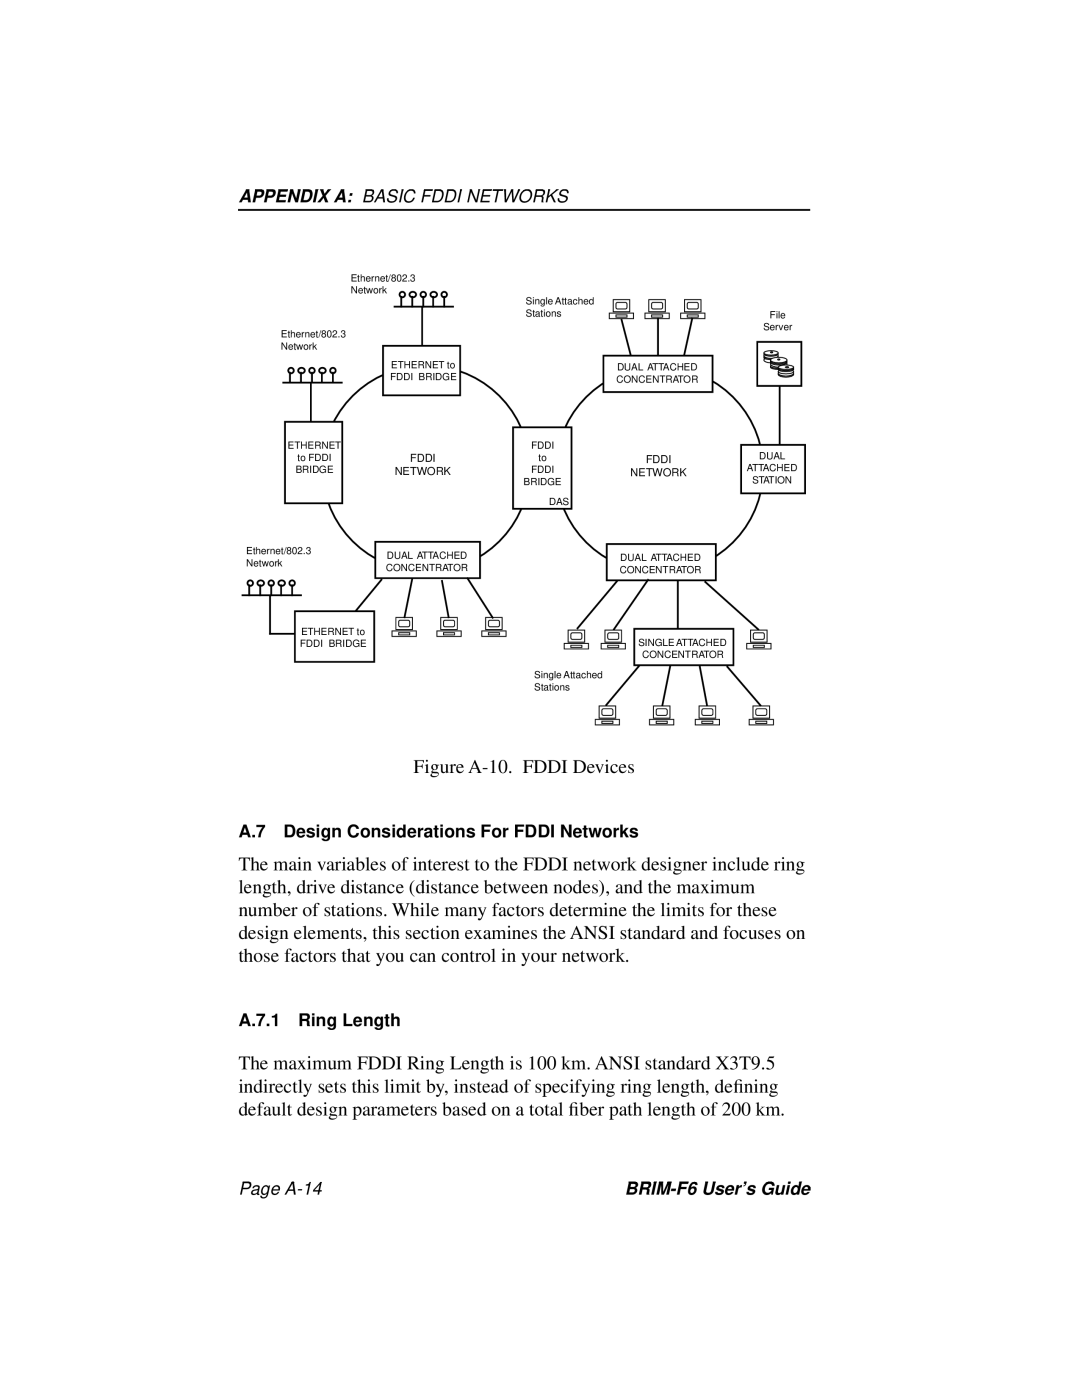 Cabletron Systems BRIM-F6 manual Figure A-10. FDDI Devices 